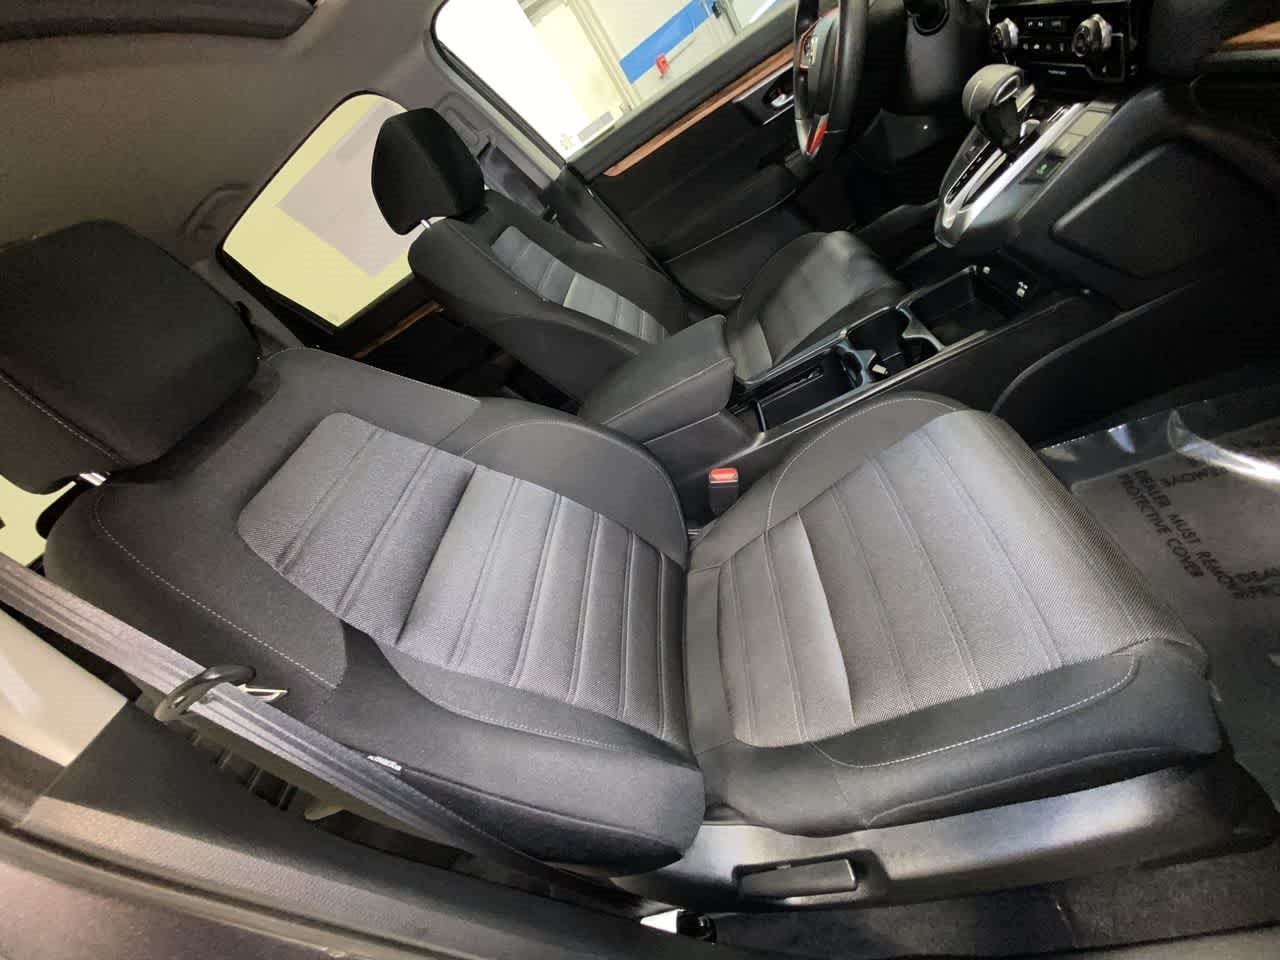 2020 Honda CR-V EX